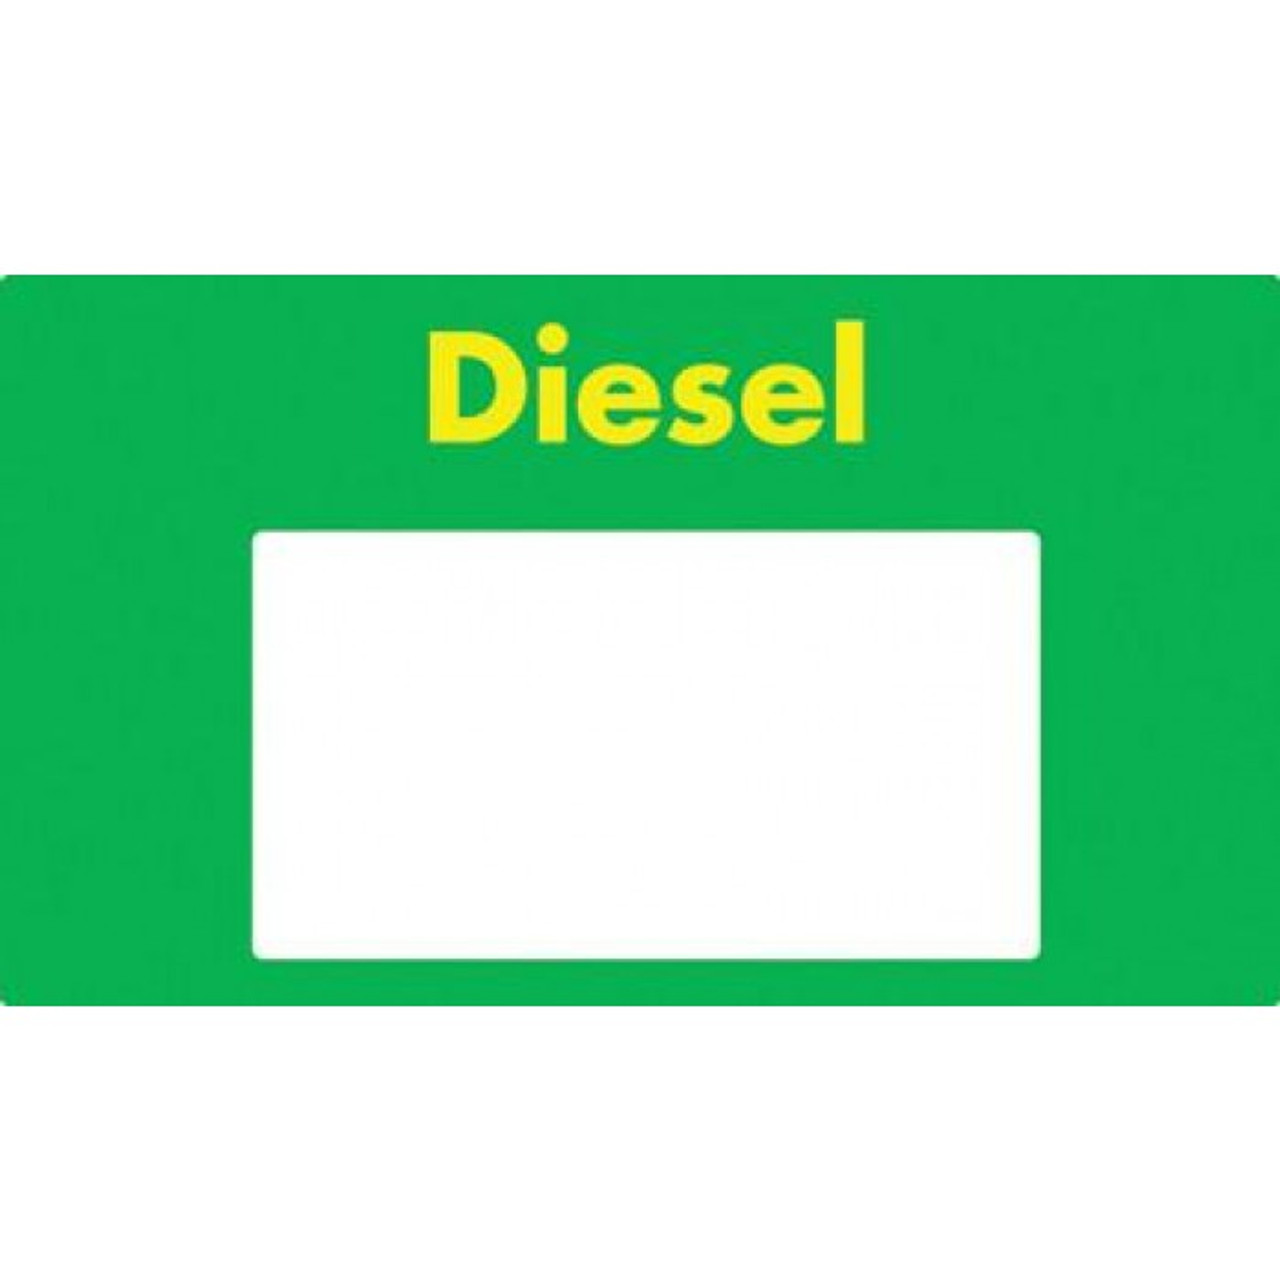 T18785-G1634 - 6 Hose Brand Panel Shell Diesel